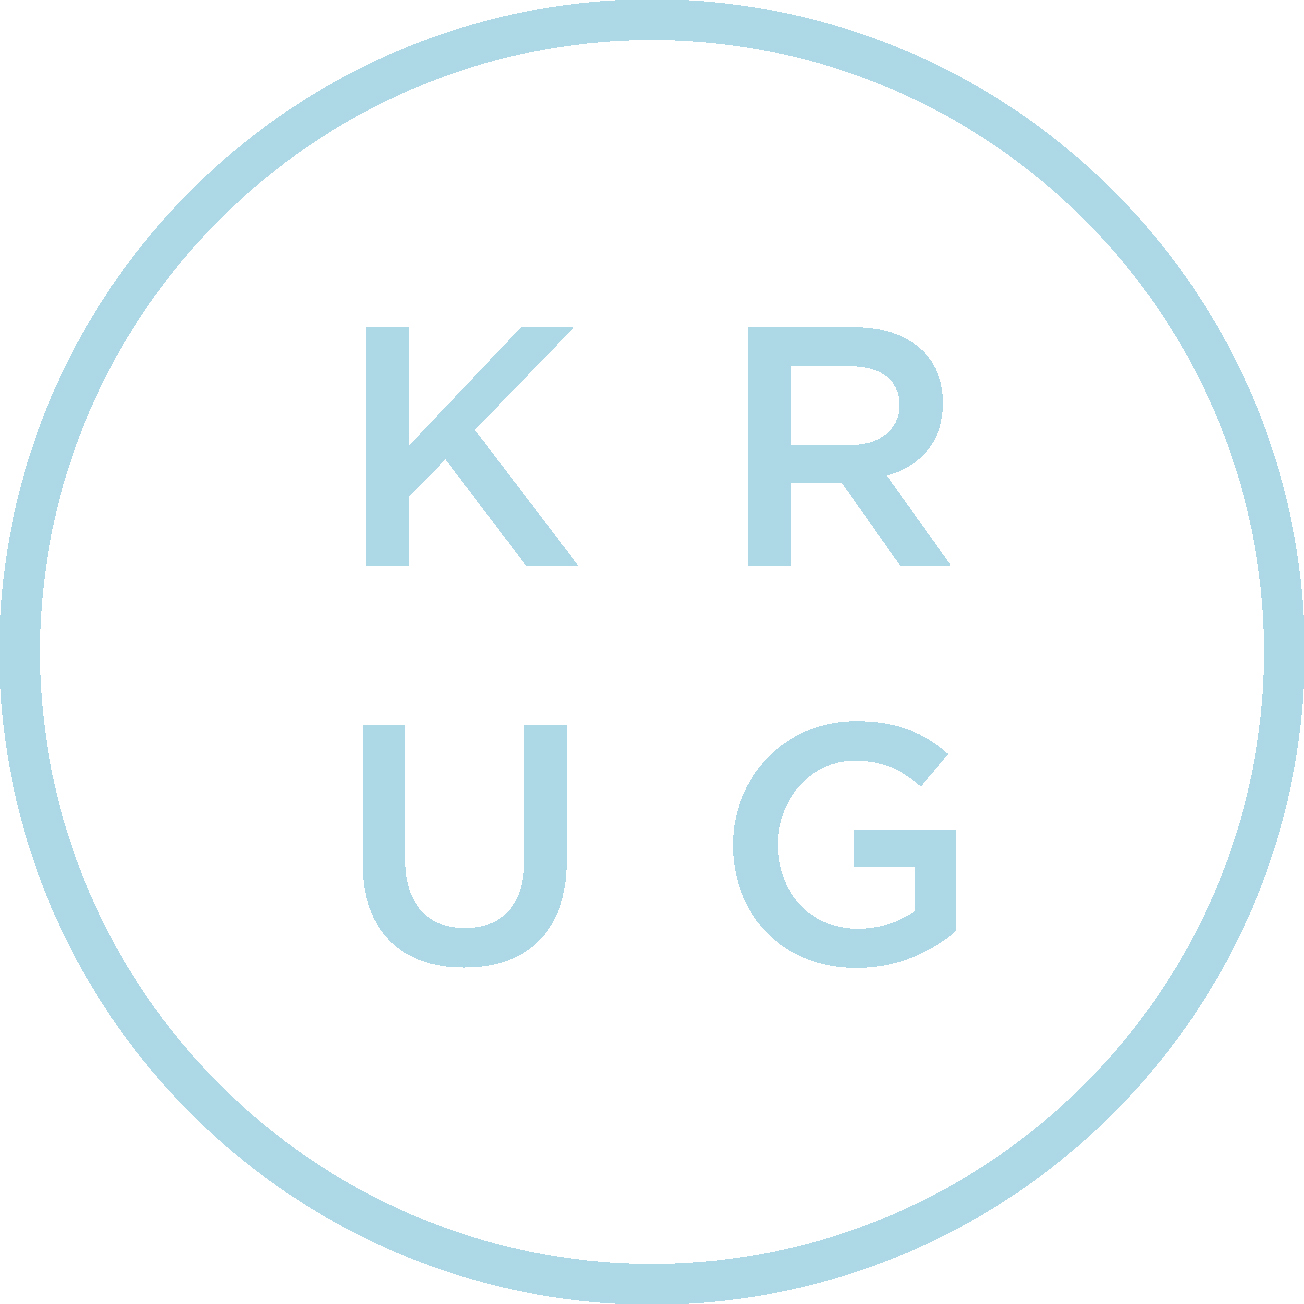 KRUG Store – KRUG store